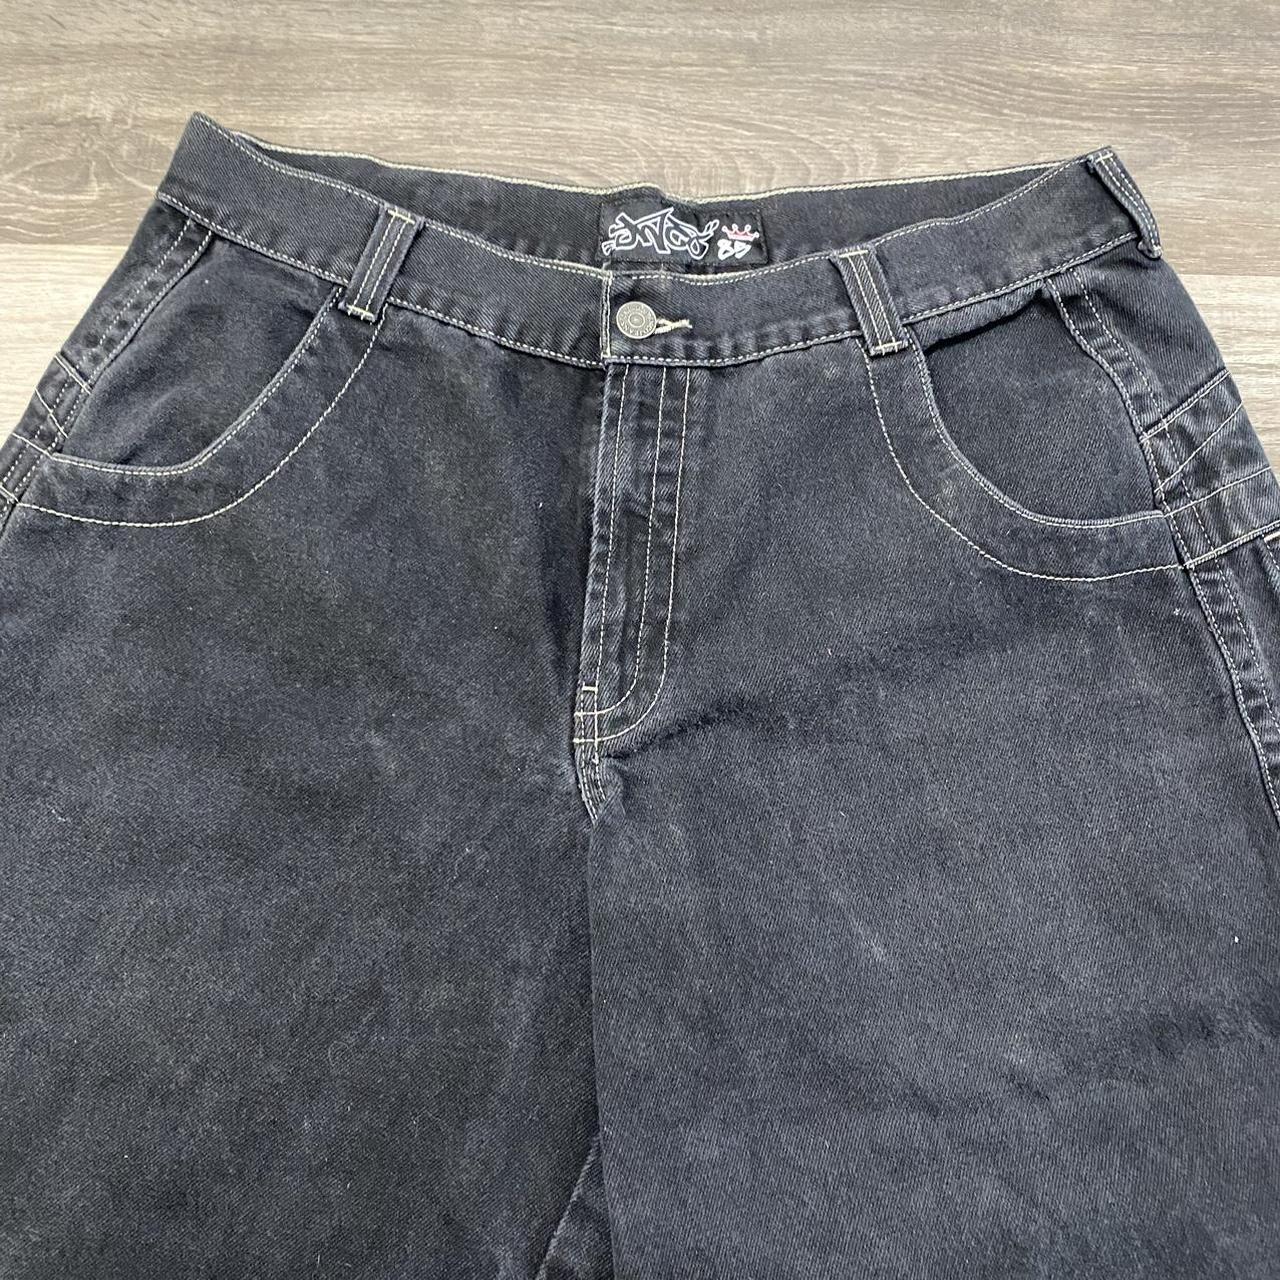 Vintage Jnco Jeans Silverback Gorillas (RARE) -... - Depop